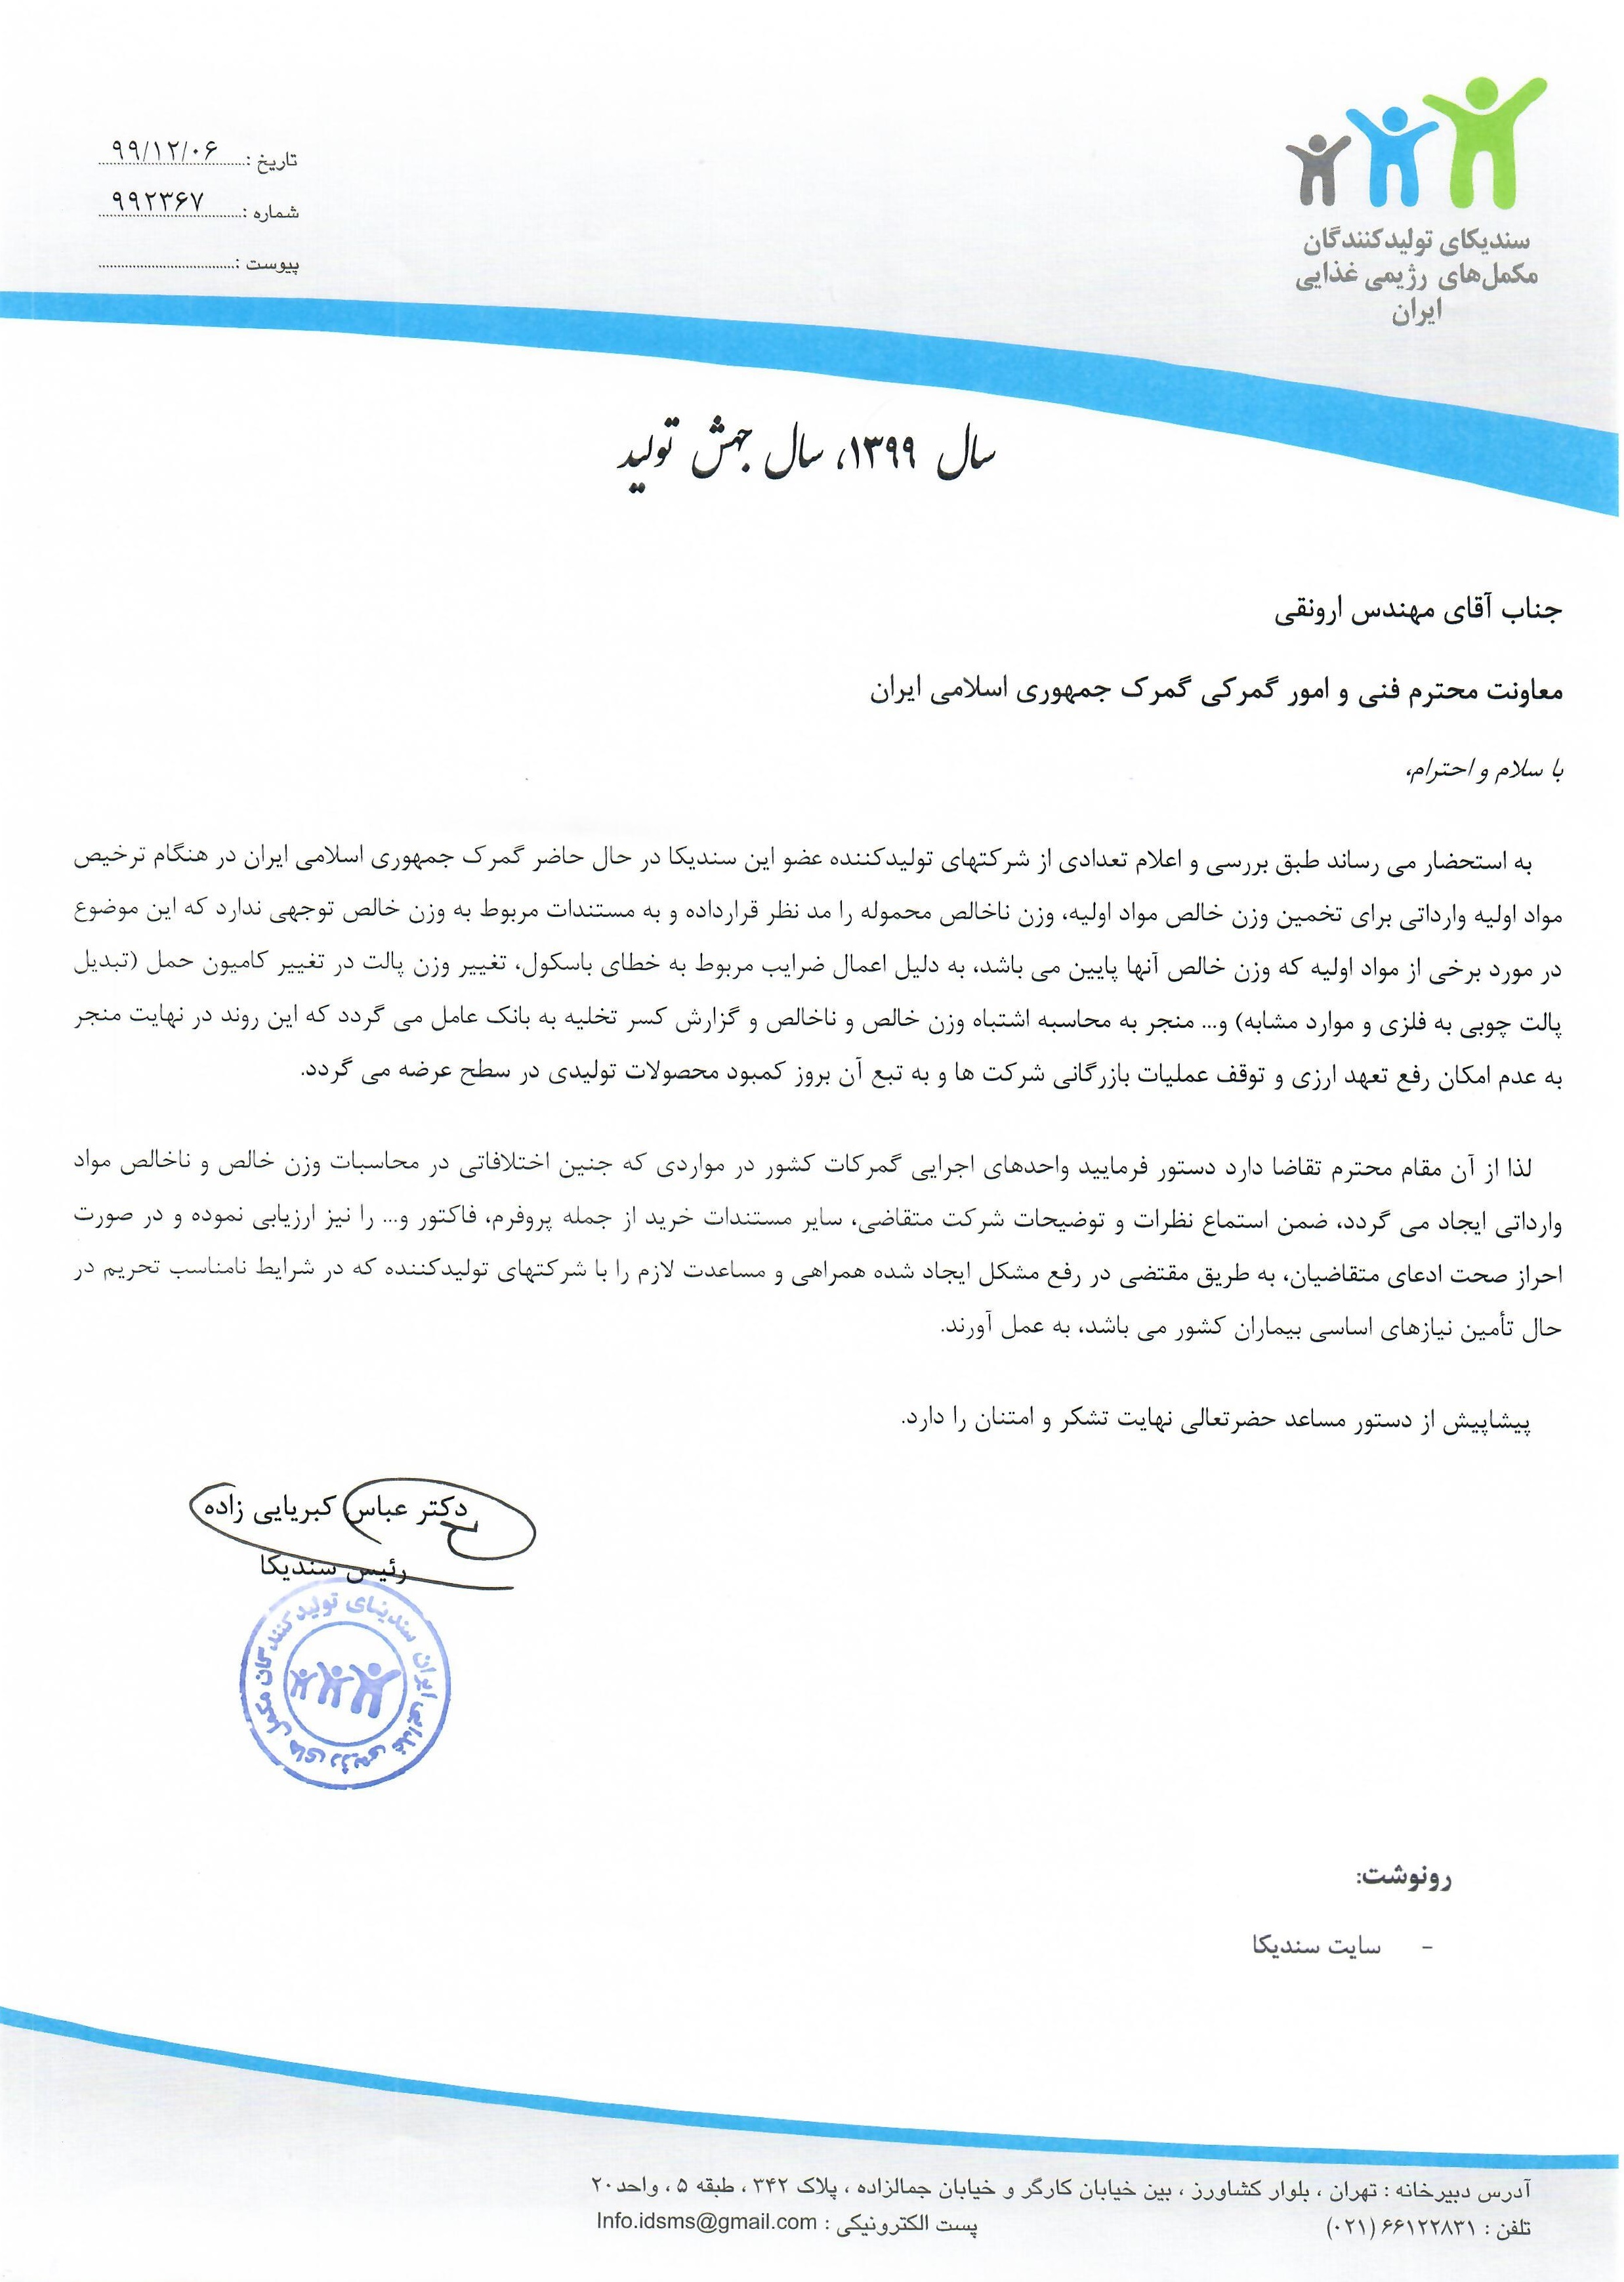 نامه به گمرک ایران در خصوص محاسبات وزن خالص و ناخالص مواد اولیه وارداتی 